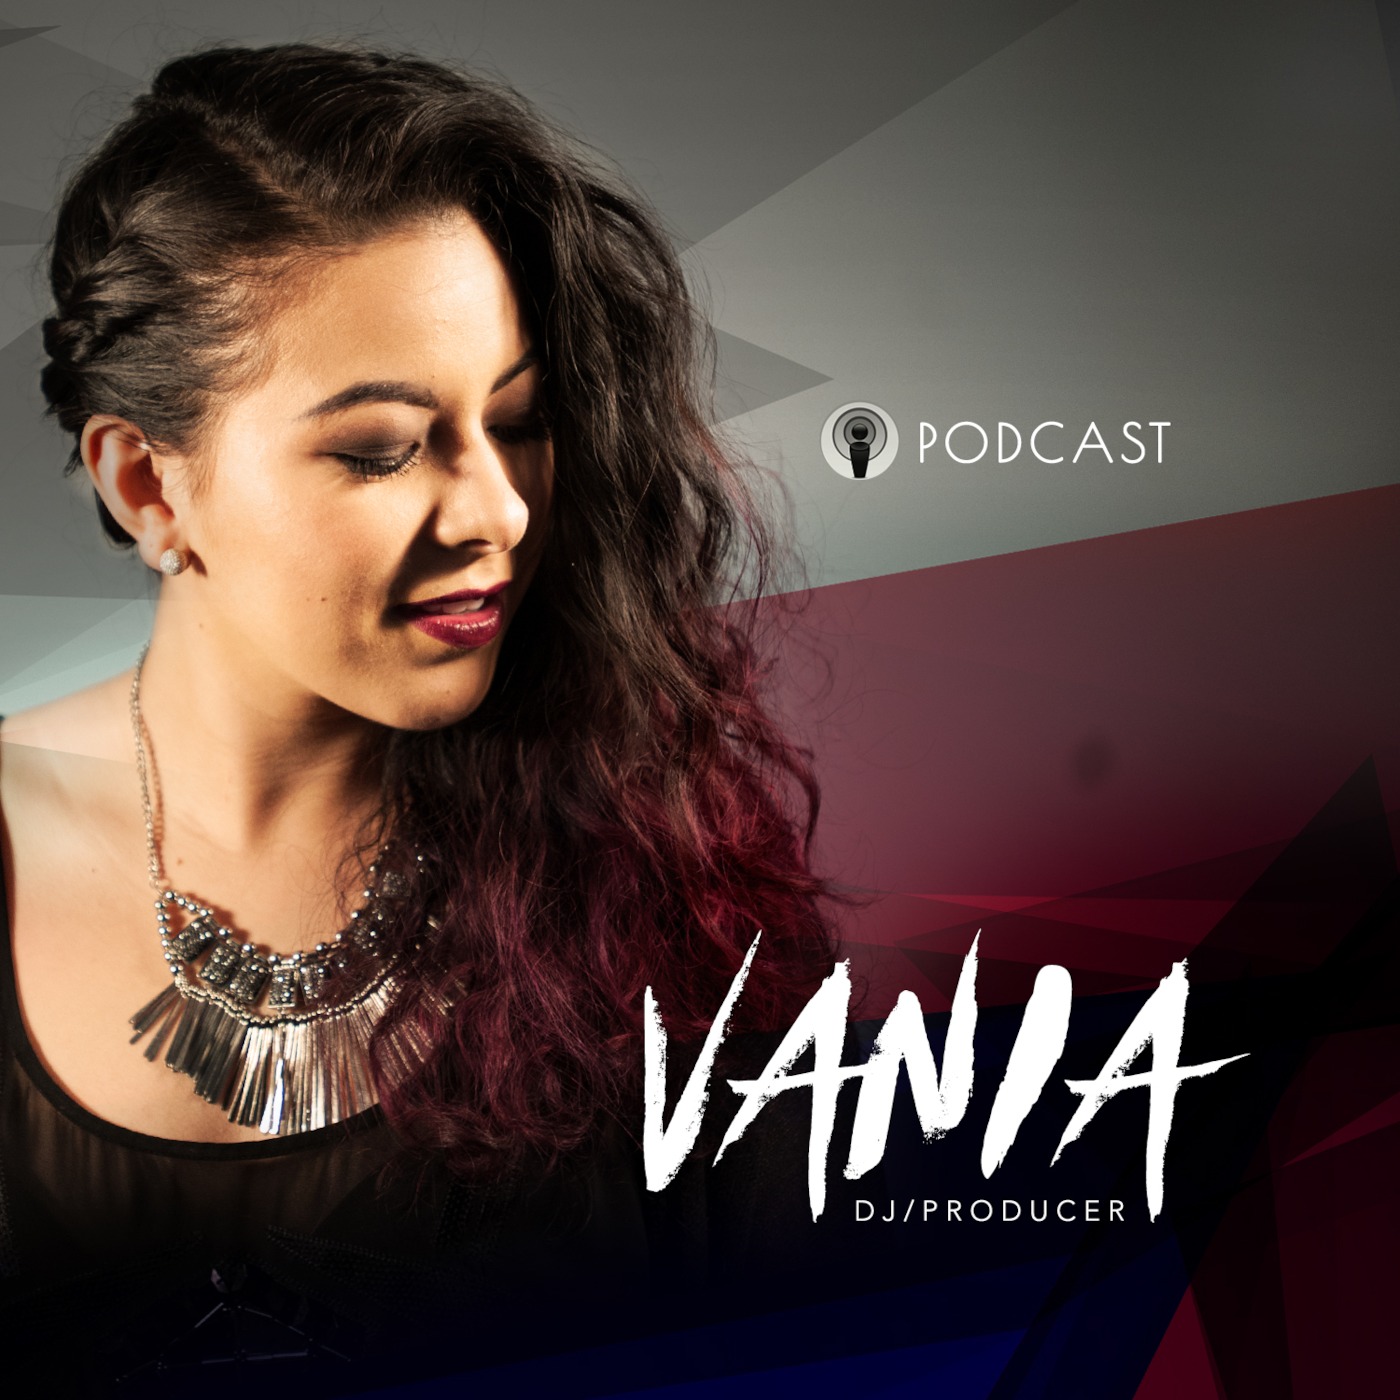 Vania Podcast